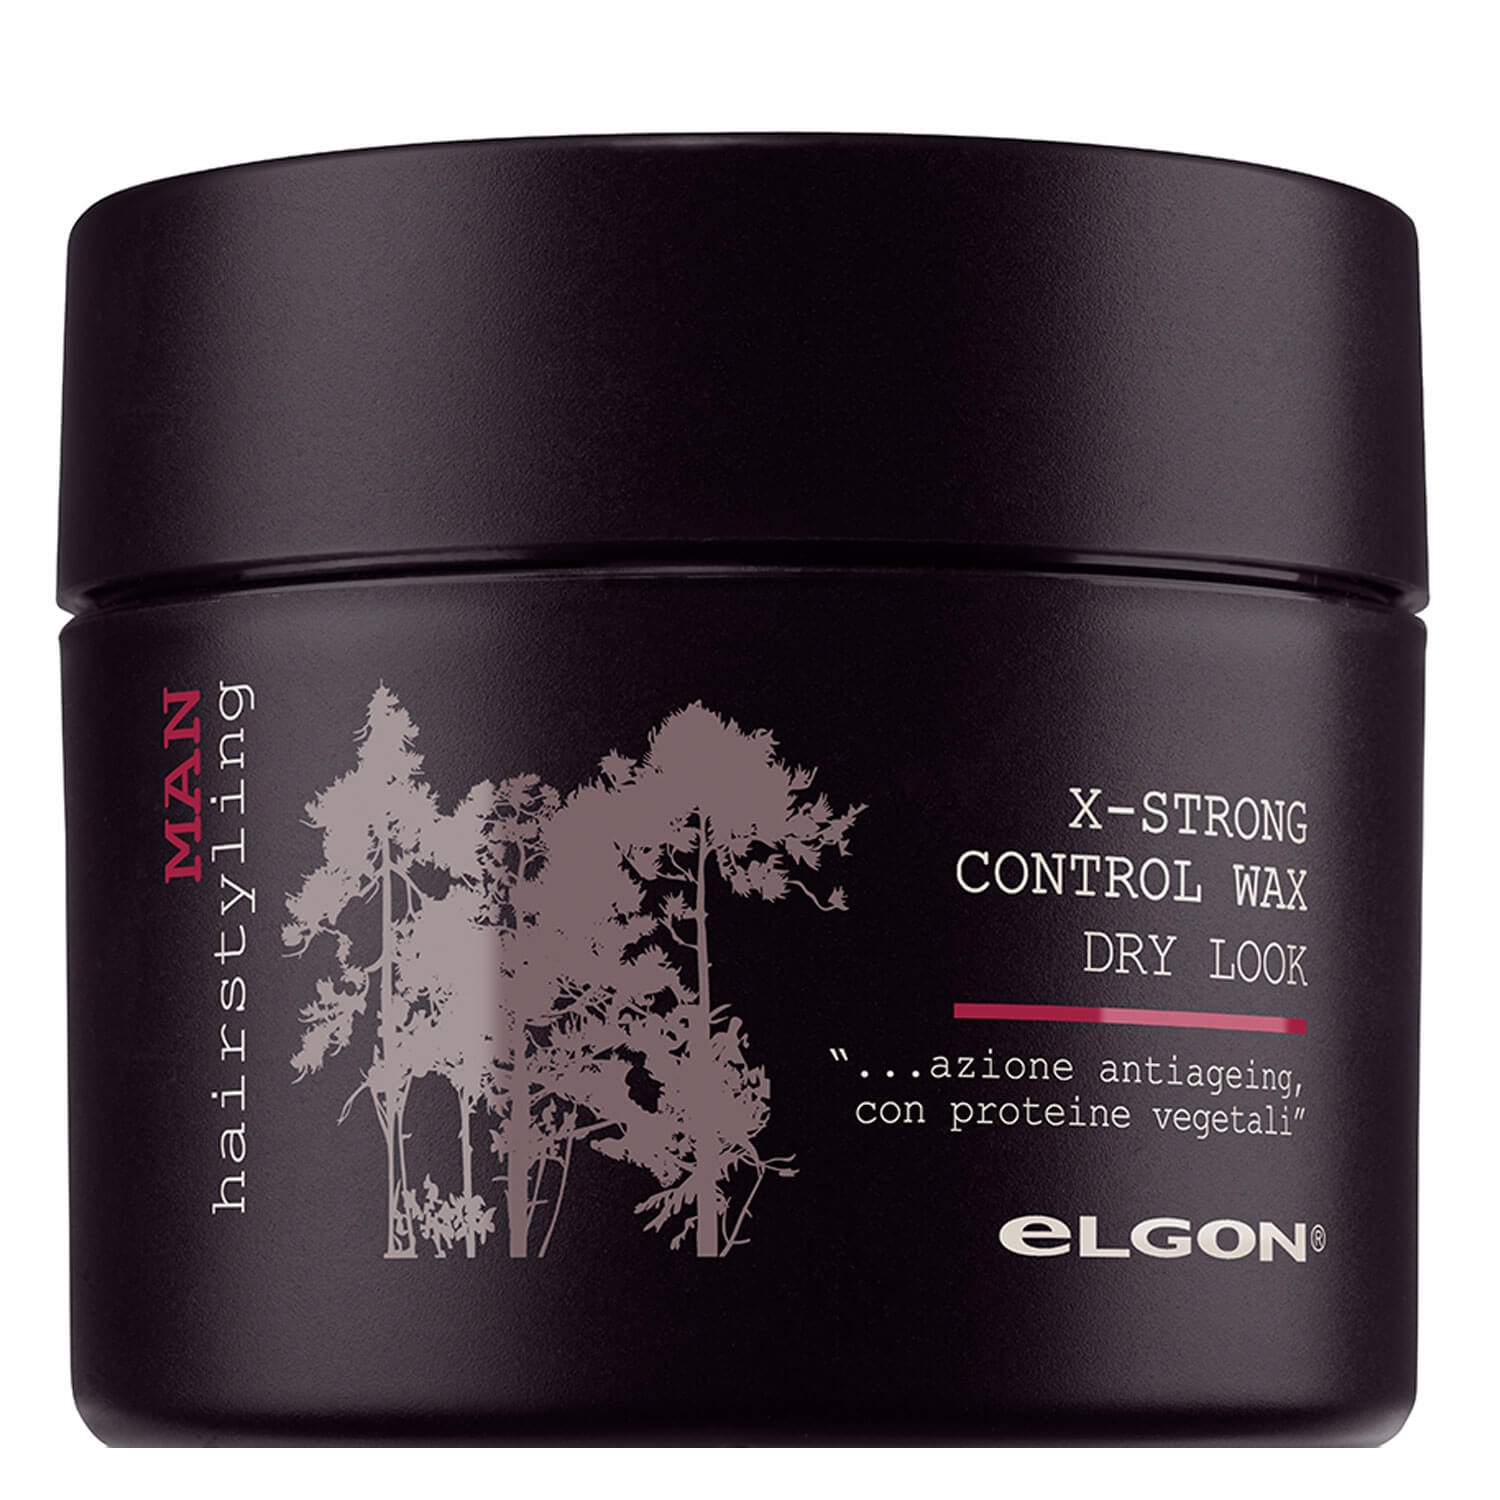 Produktbild von Elgon for Men - X-Strong Control Wax